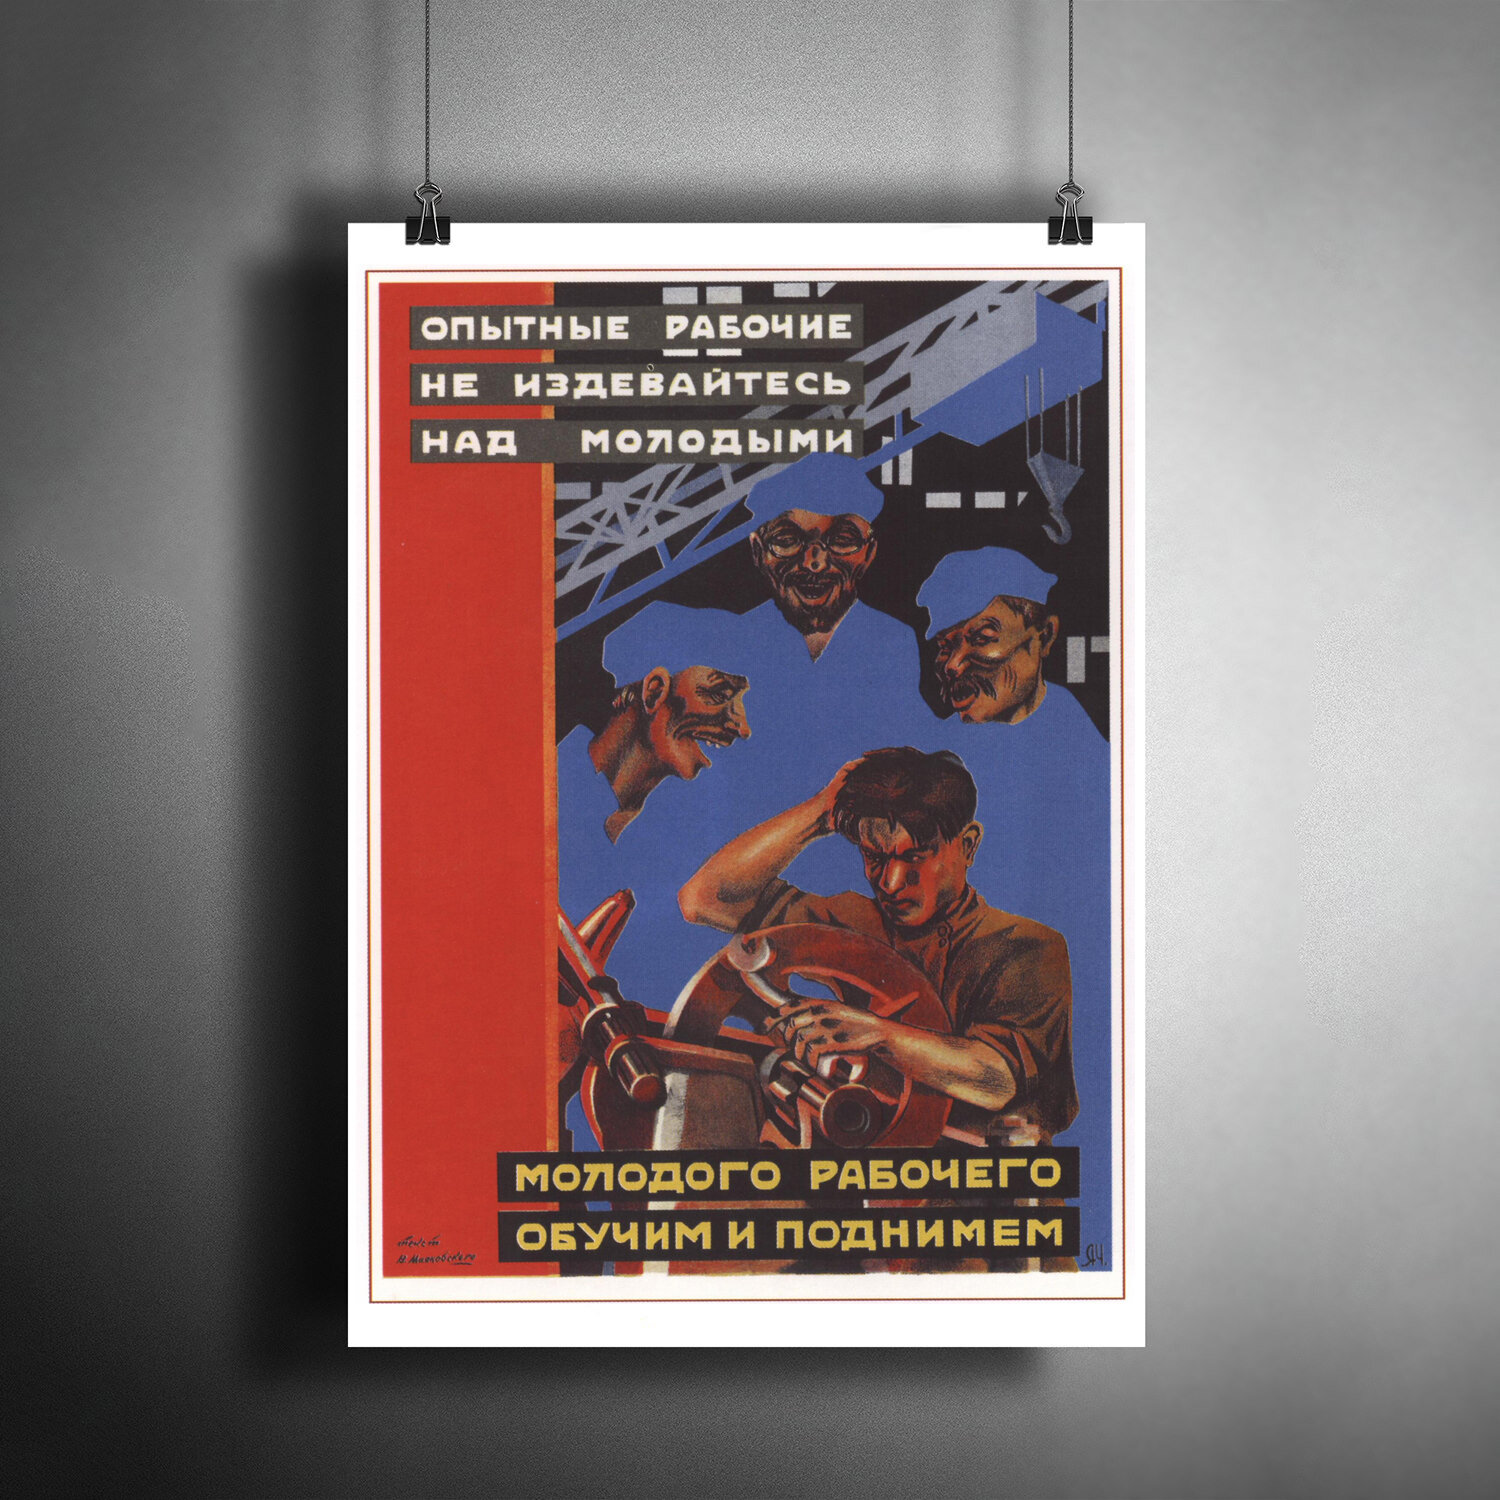 Постер плакат для интерьера "Советский плакат "Опытные рабочие не издевайтесь над молодыми" 1930 г."/ A3 (297 x 420 мм)